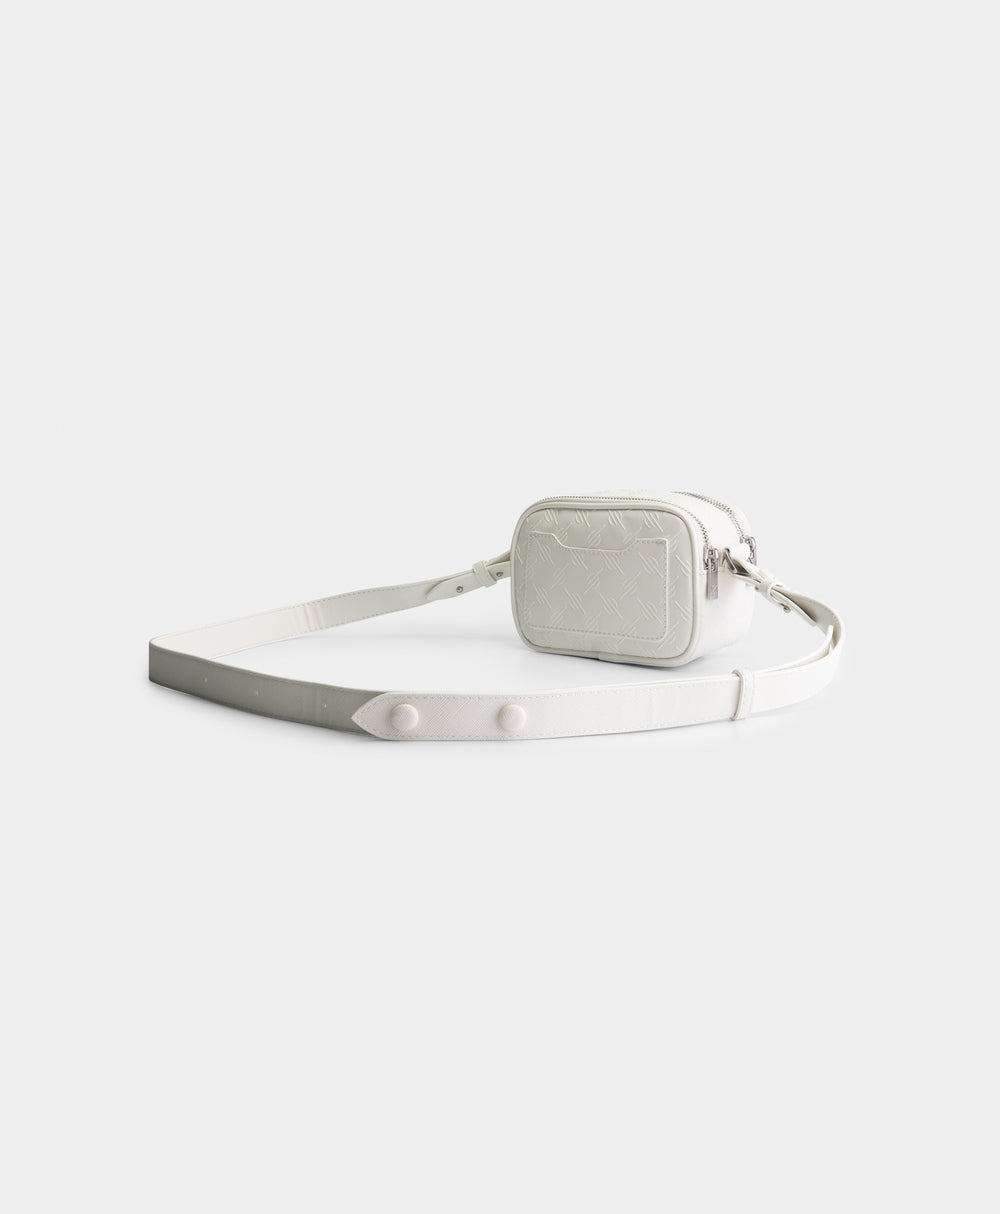 DP - White May Monogram Bag - Packshot - Rear